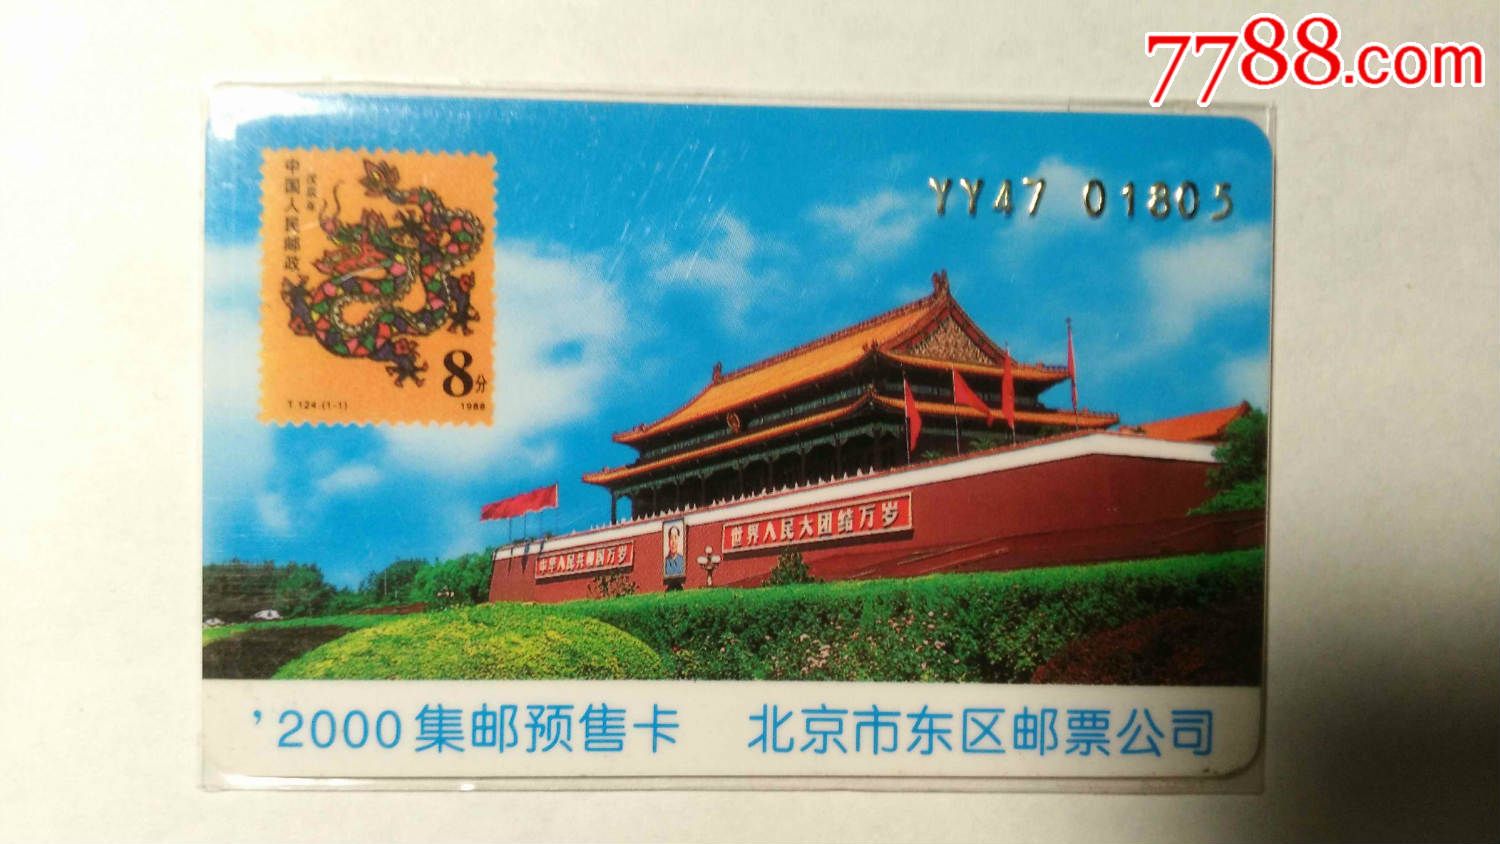 北京市东区邮票公司---'2000集邮预售卡-价格:1